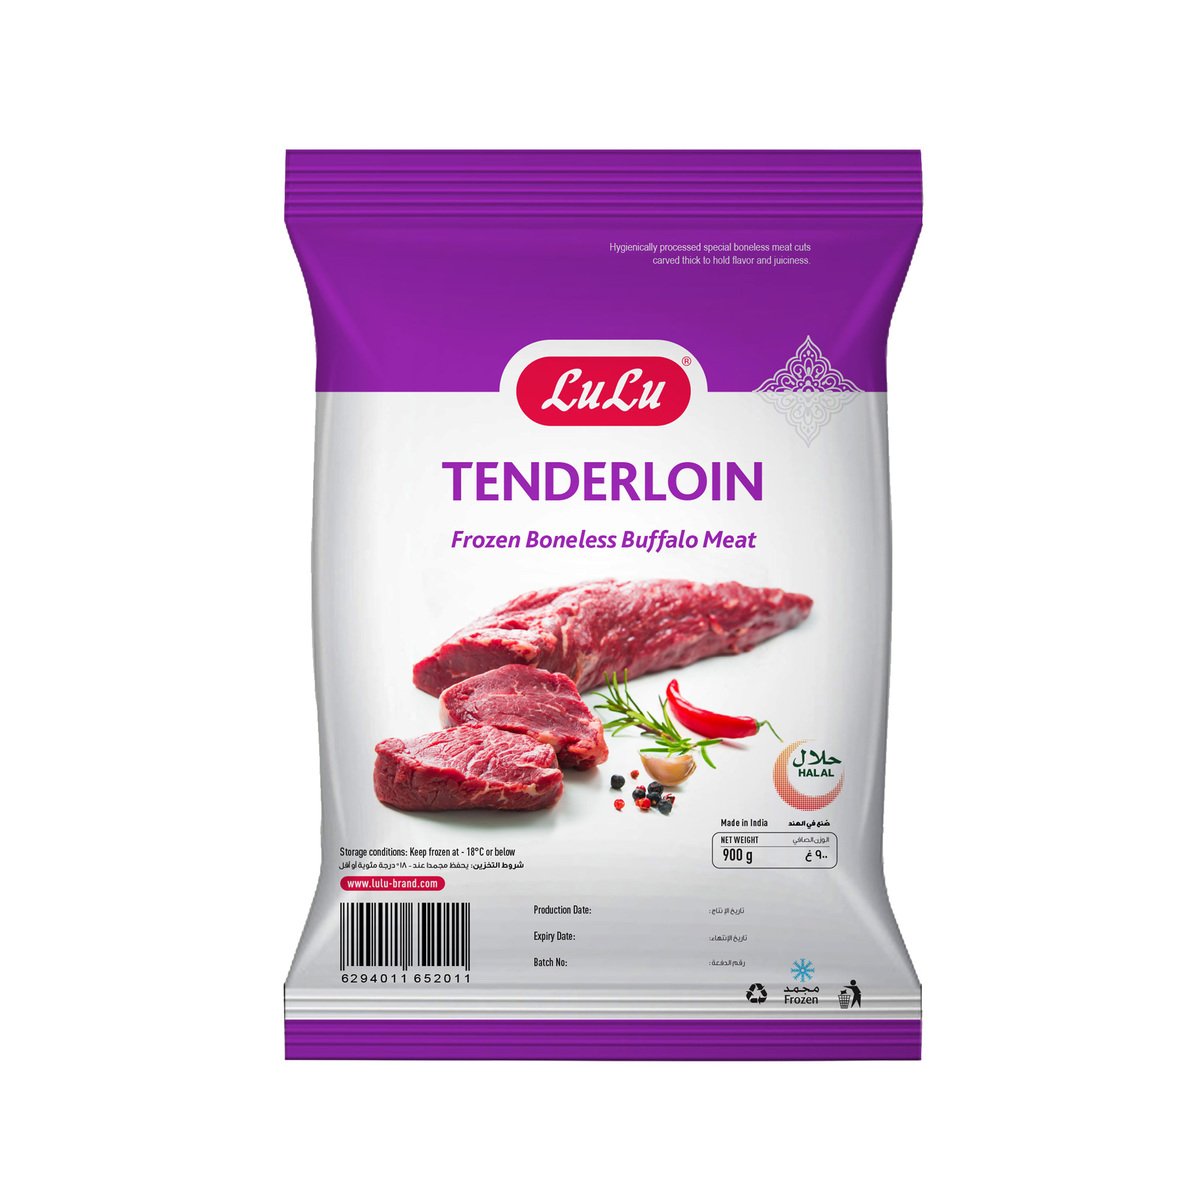 LuLu Tenderloin Frozen Boneless Buffalo Meat 900g